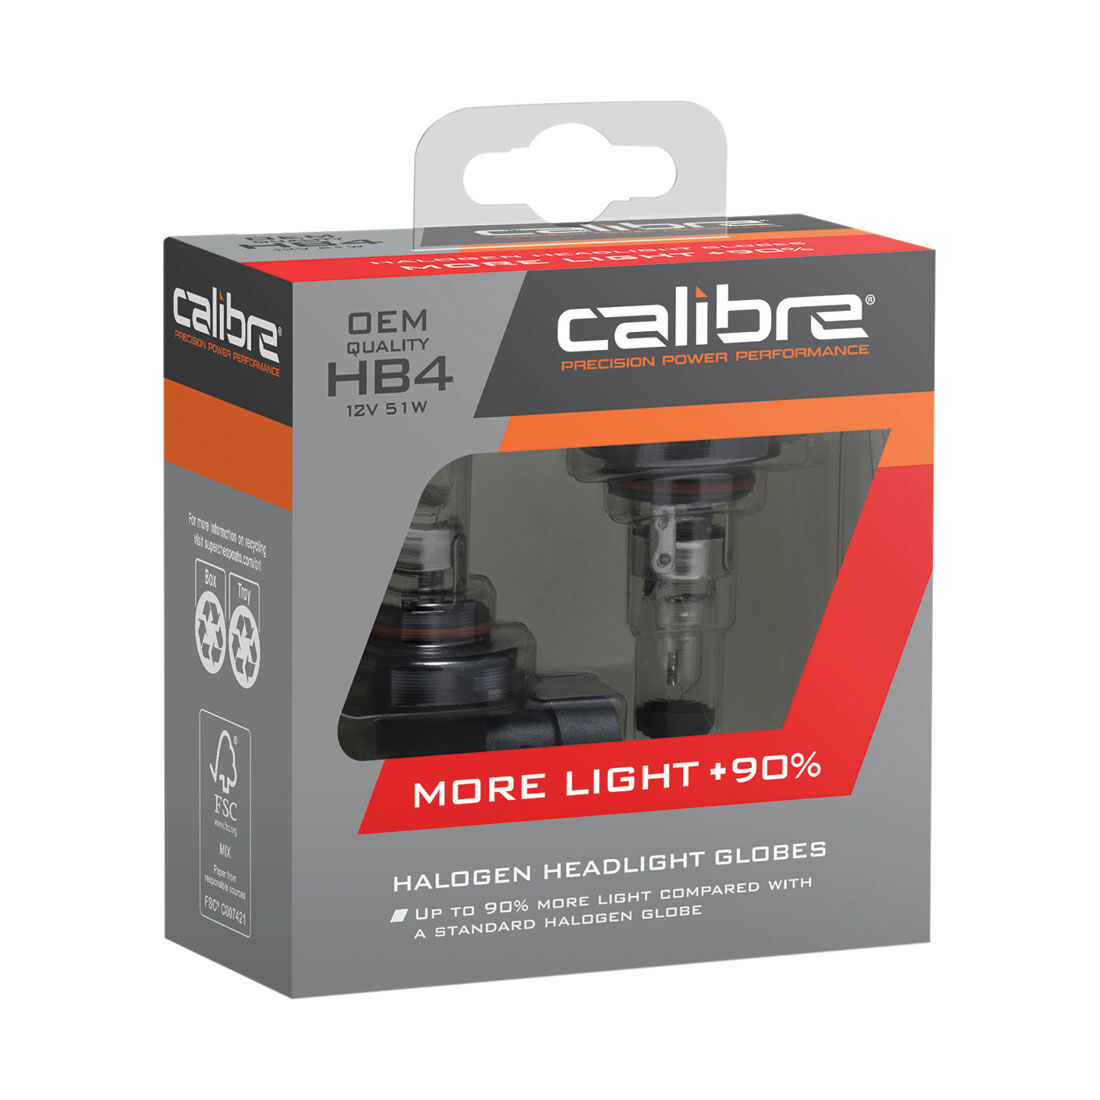 Calibre Plus 90 Headlight Globes - HB4, 12V 51W, CA90HB4, , scaau_hi-res